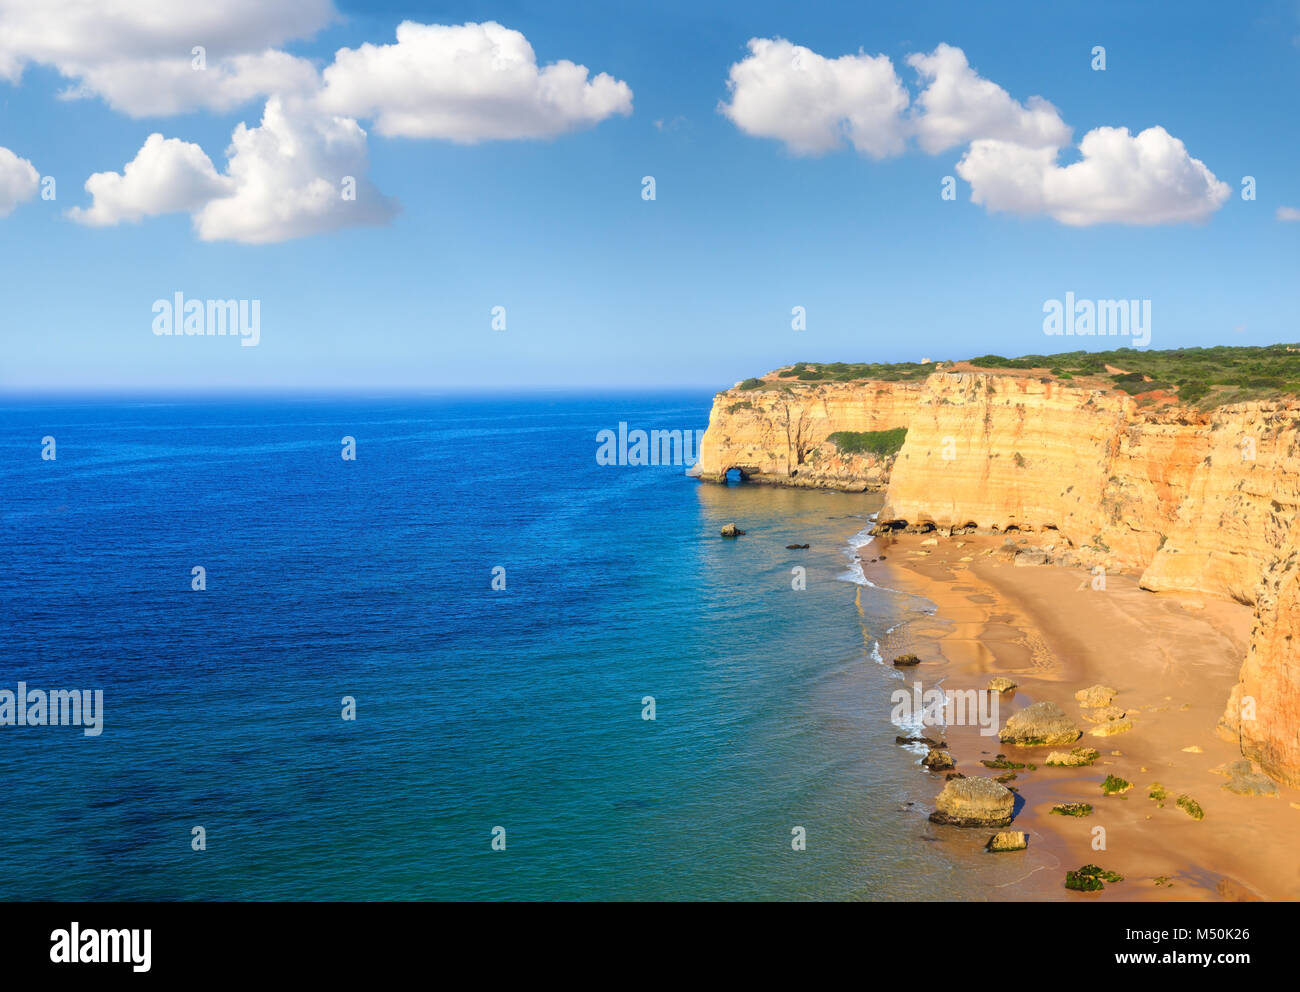 Praia da Afurada (Algarve, Portugal). Stock Photo